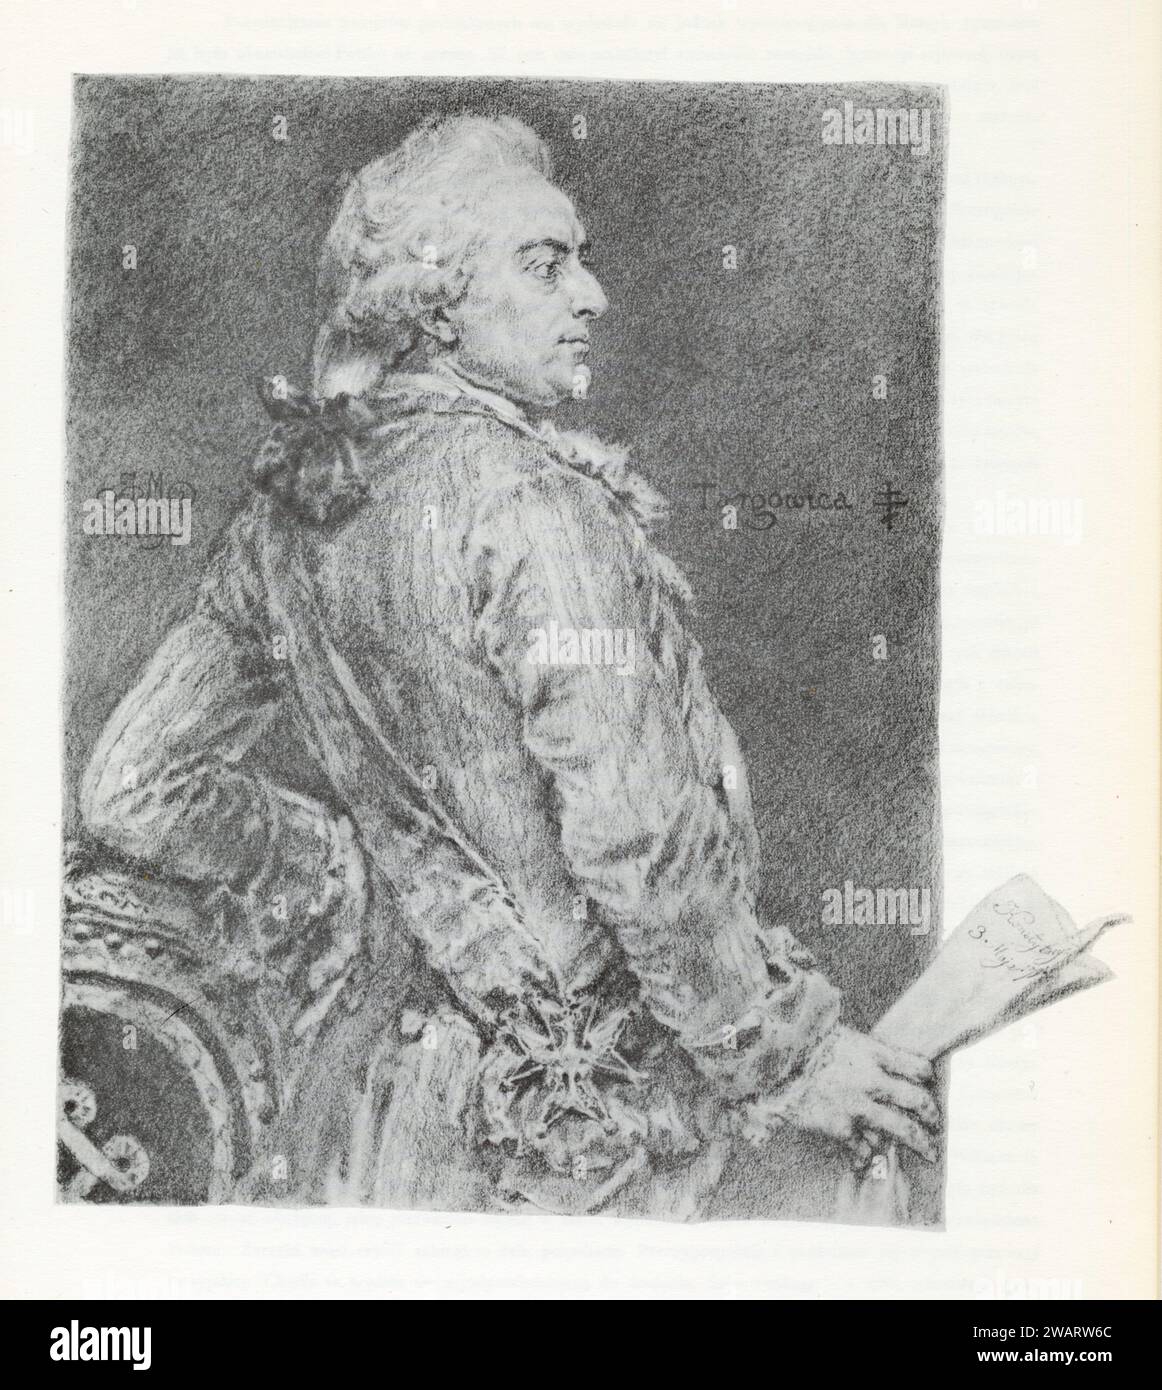 Stanisław II August, urodzony jako Stanisław Antoni Poniatowski herbu Ciołek (ur. 17 stycznia 1732 w Wołczynie, zm. 1 lutego?/12 lutego 1798 w Petersb Stock Photo